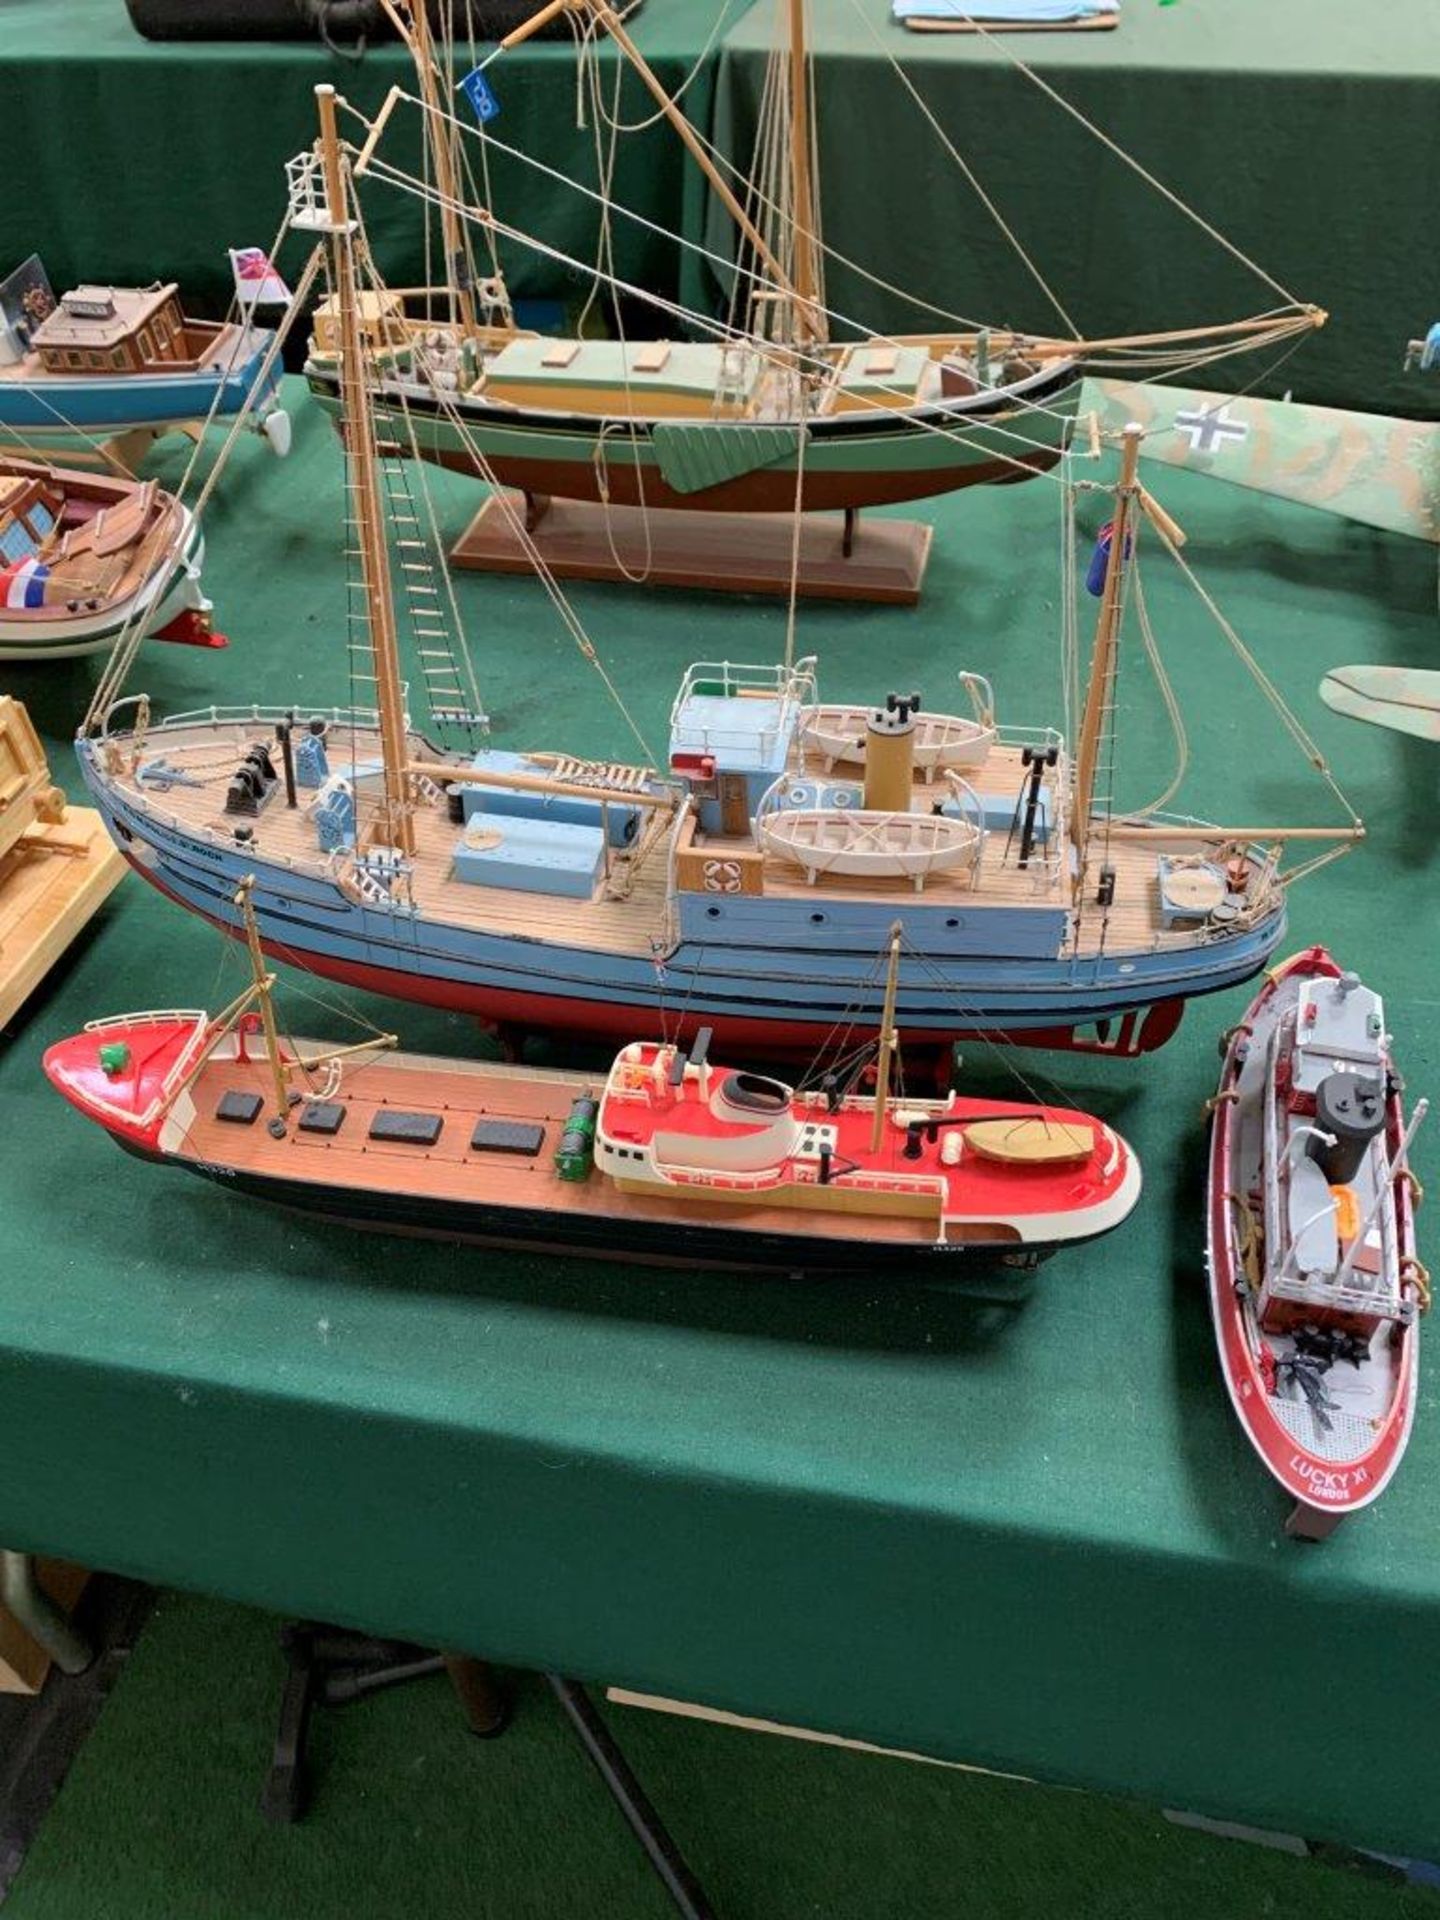 Three model boats.